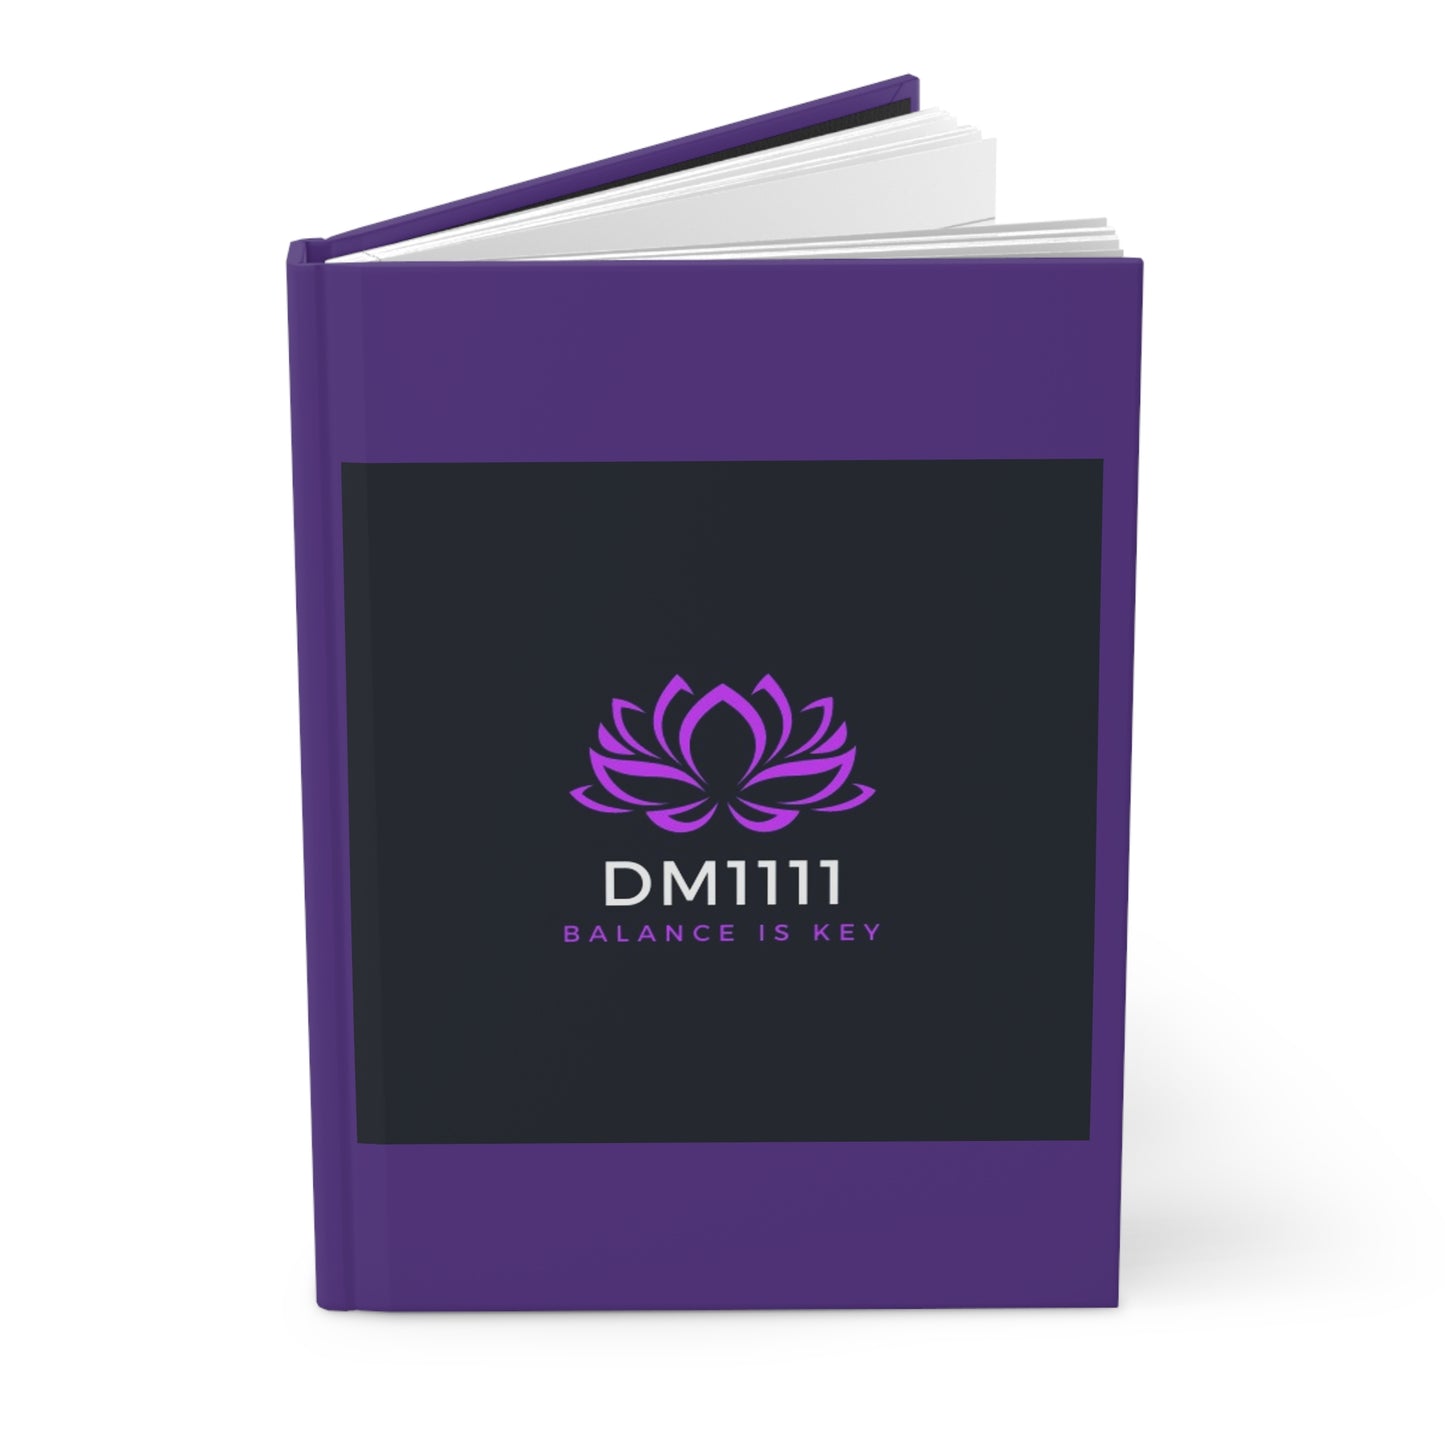 DM1111 Hardcover Journal Matte